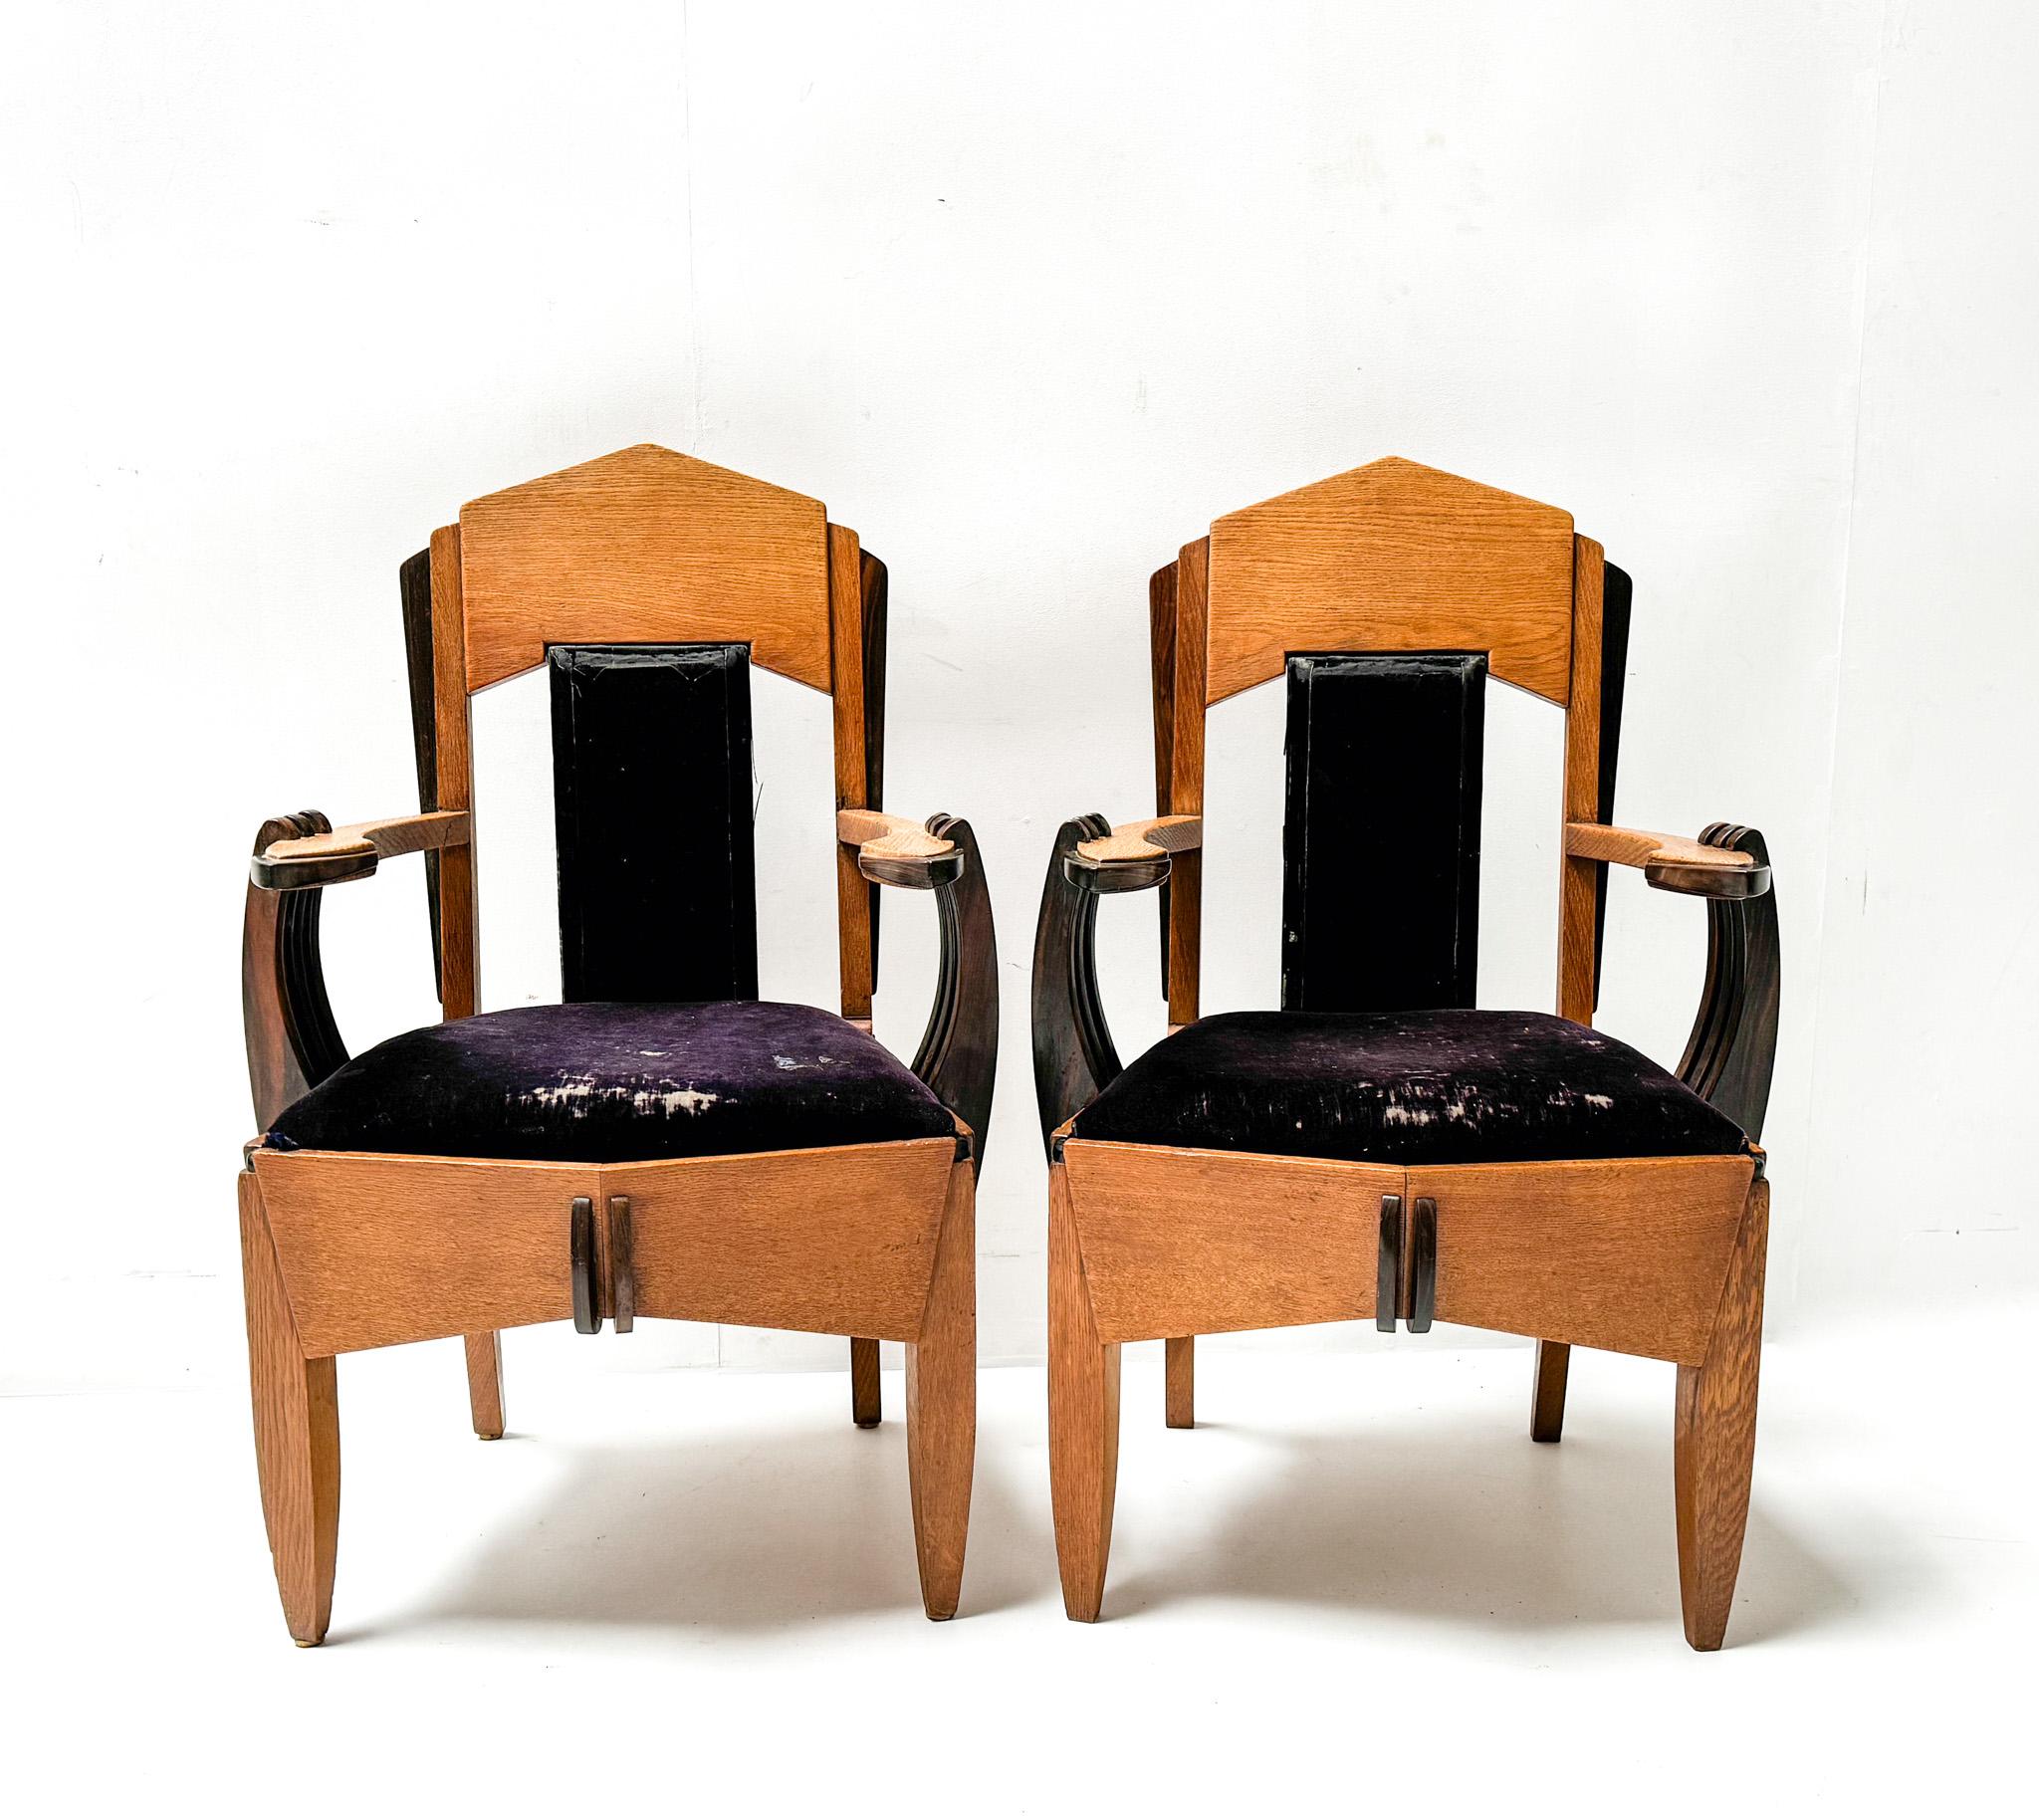 Magnifique et très rare paire de fauteuils Art Déco de l'Ecole d'Amsterdam.
Design/One.
Un design néerlandais saisissant des années 1920.
Cadres en chêne massif avec éléments originaux en ébène de macassar massif.
Les deux dossiers et les deux